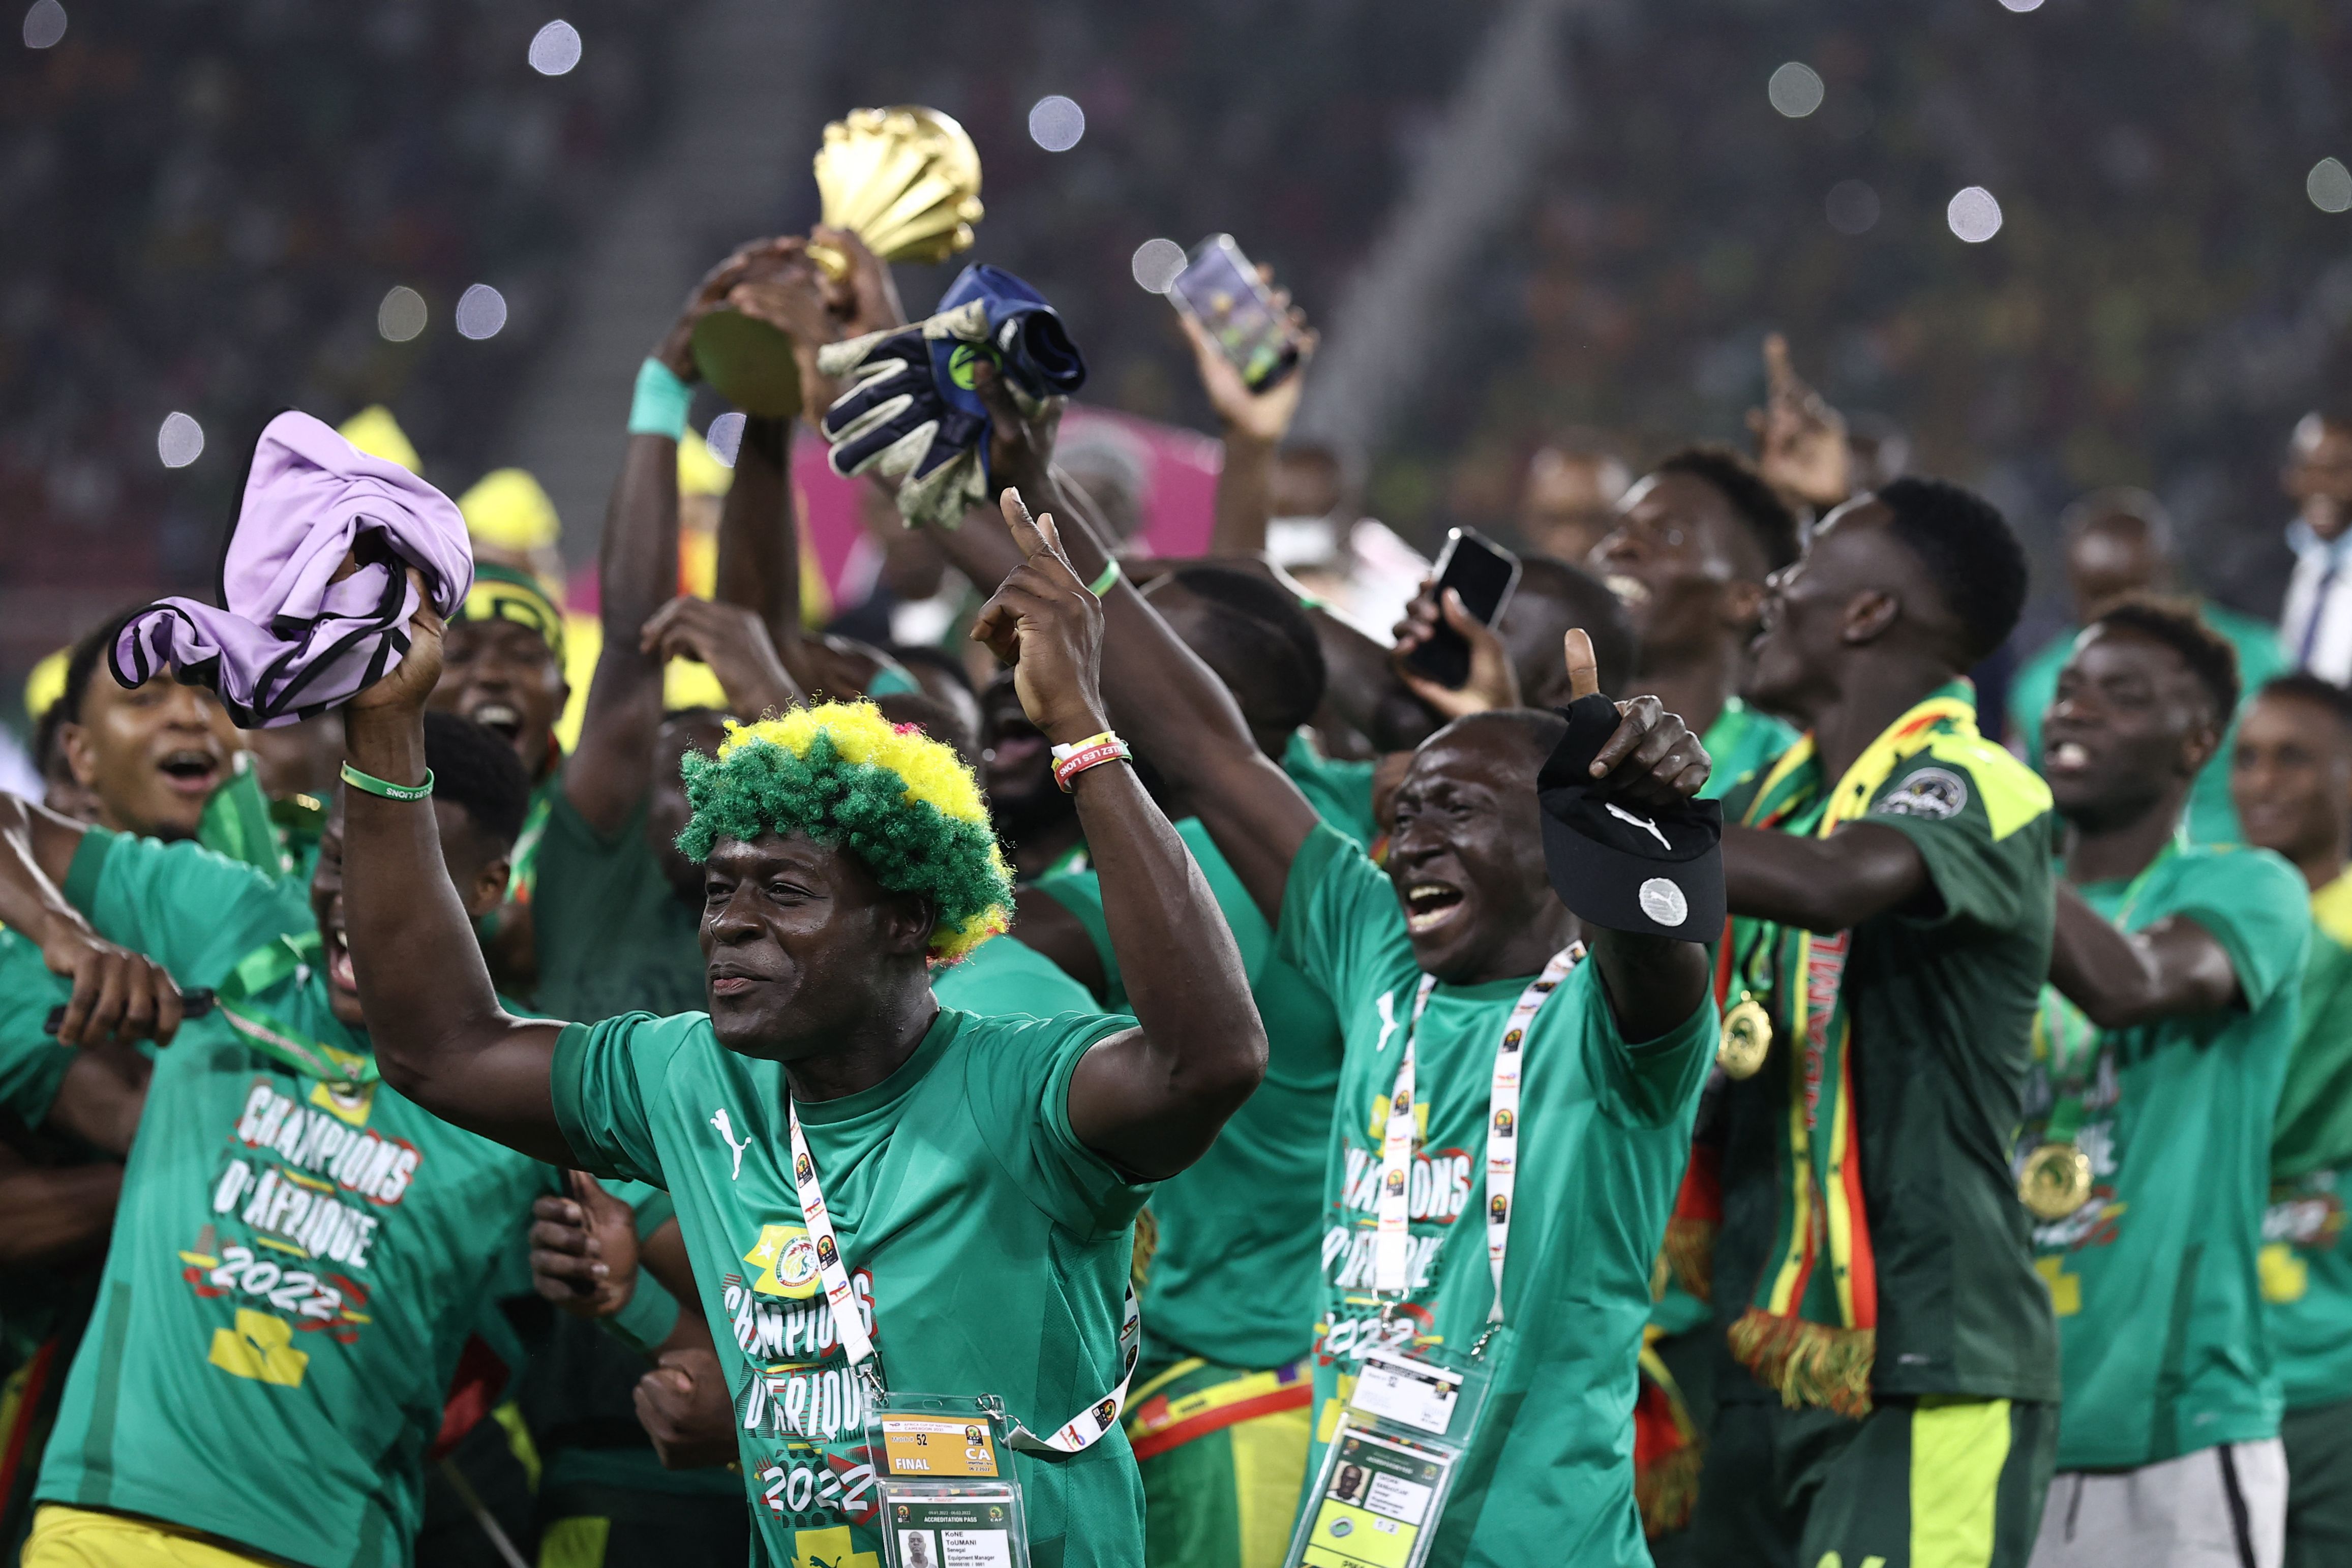 Los jugadores de Senegal festejan después de ganar la Copa Africana de Naciones 2021 a Egipto. (Foto Prensa Libre: AFP)